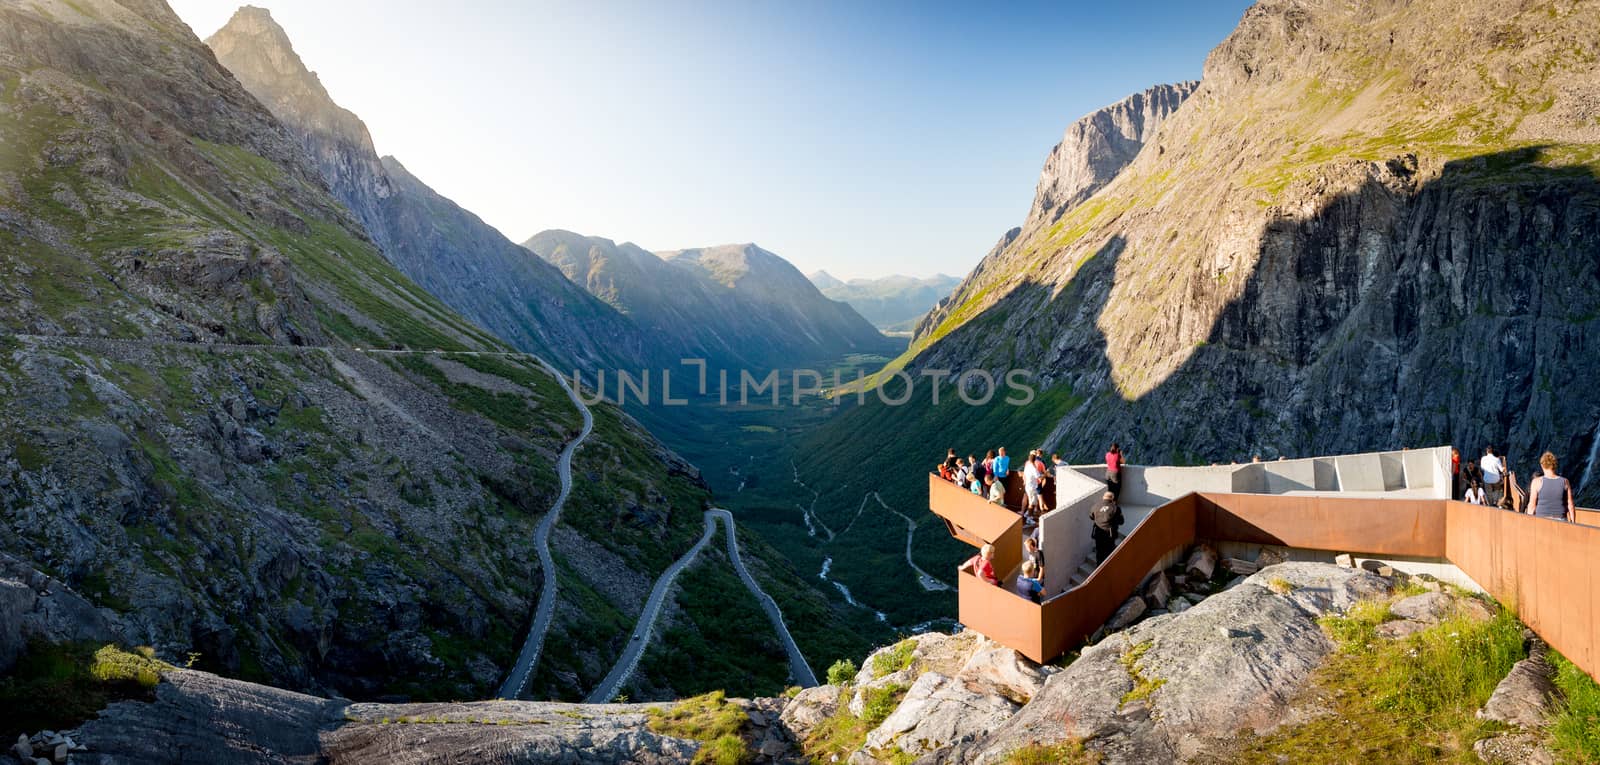 Trollstigen mountain road in Norway, Europe by Yolshin